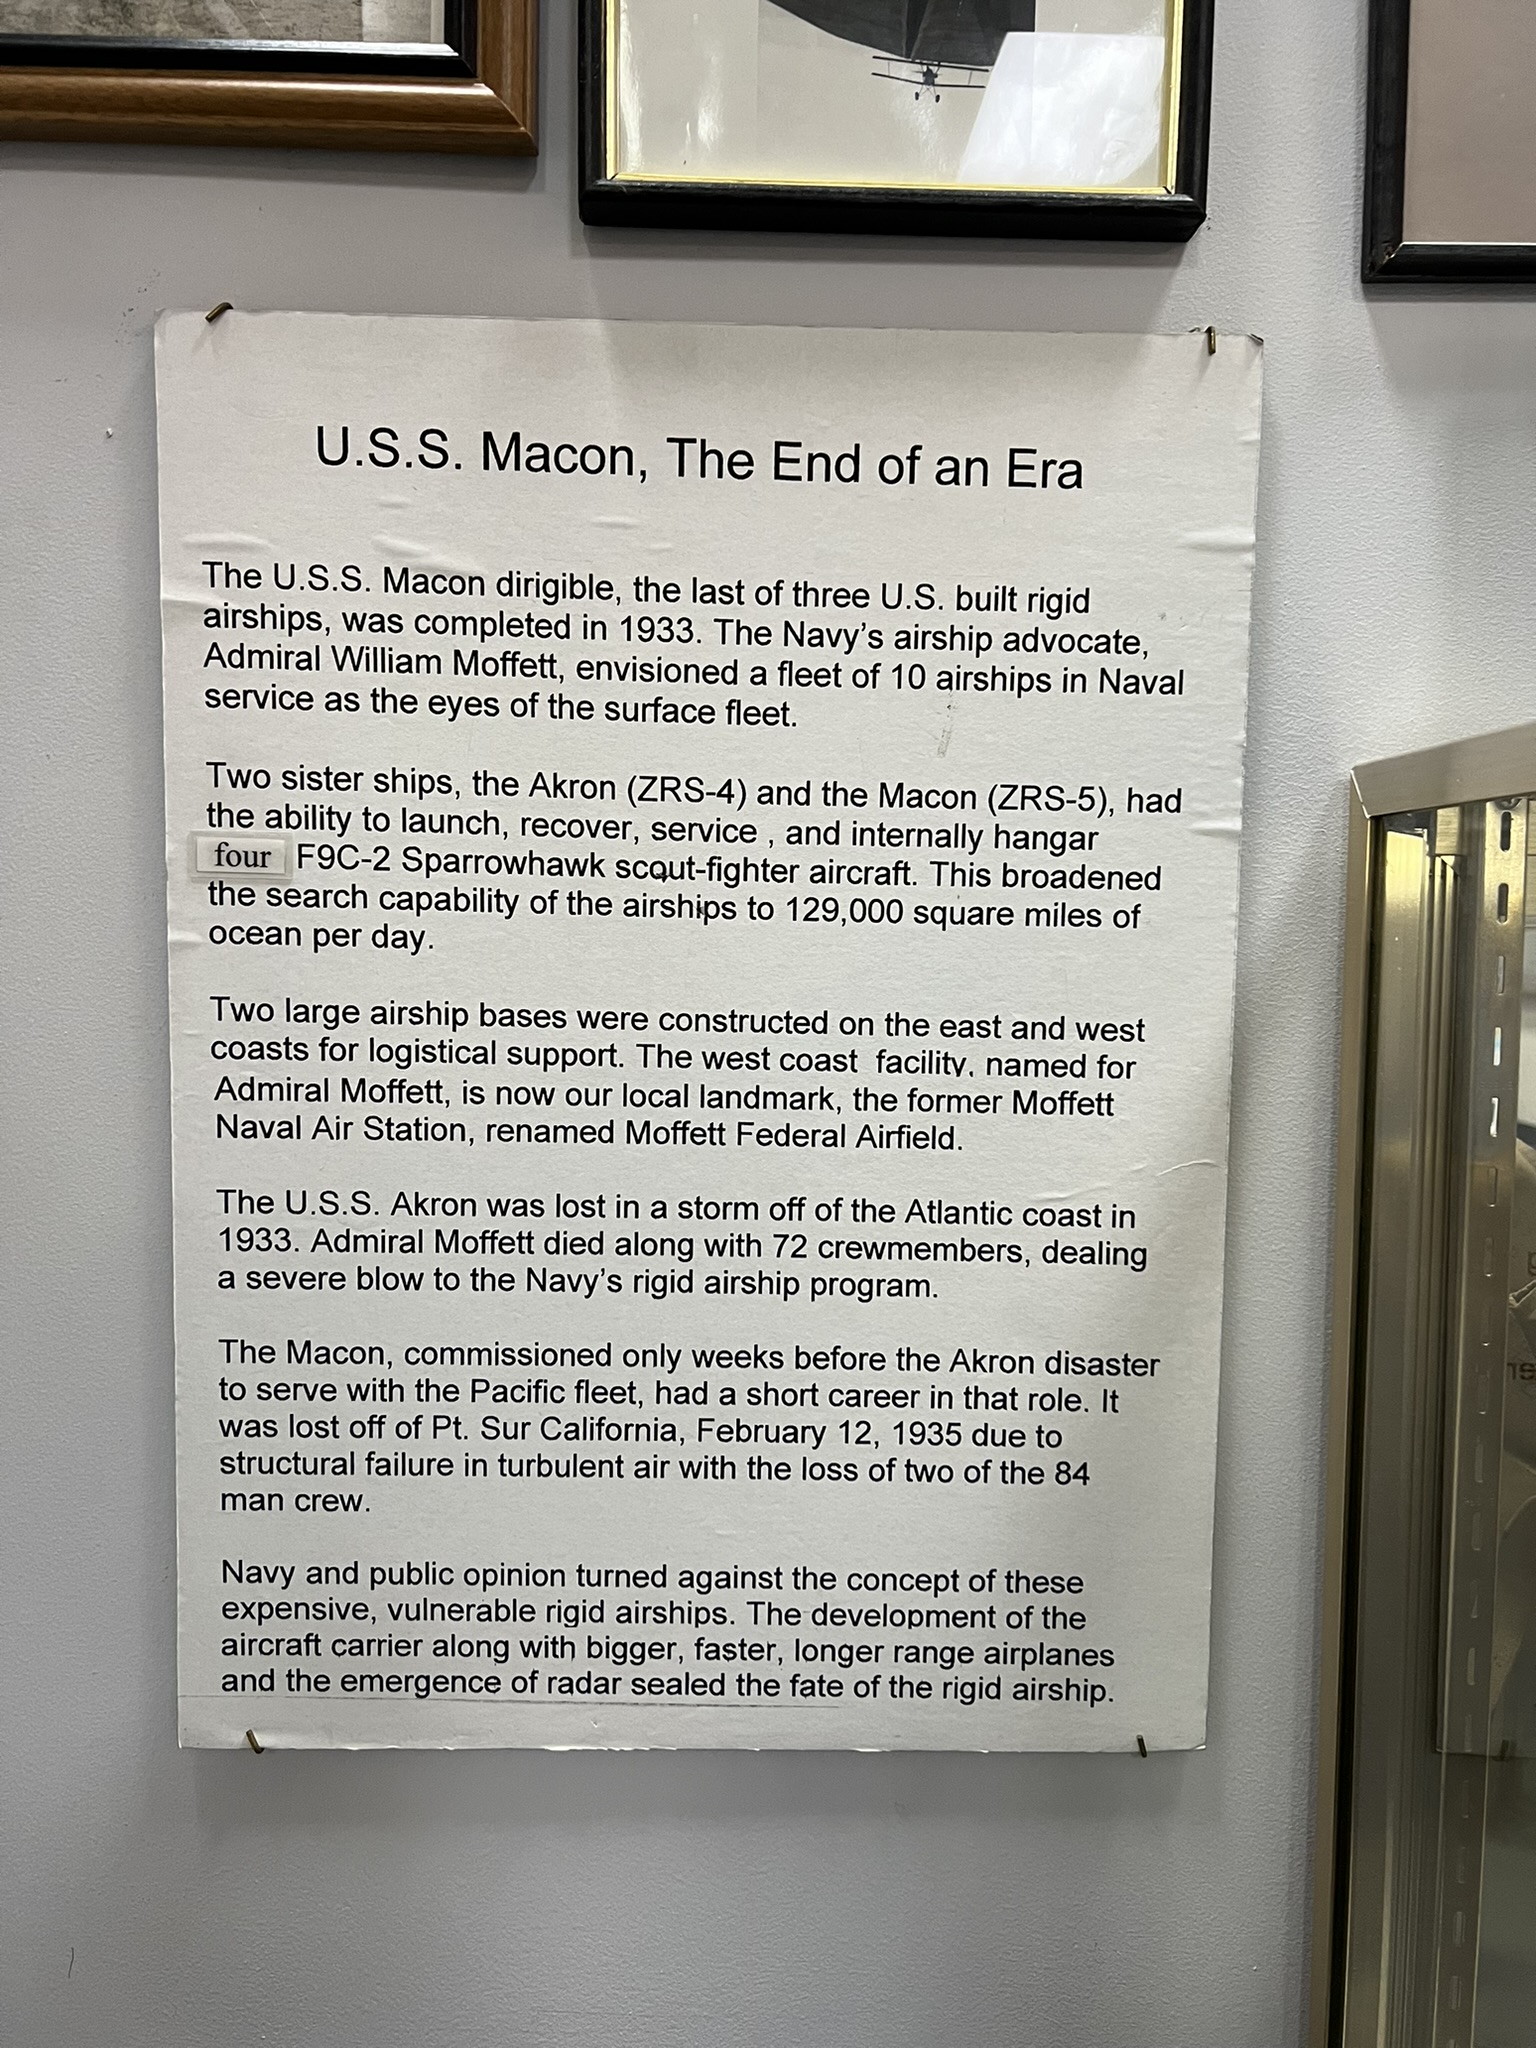 飞艇航母其实是失败的想法，海军少将 William Moffett 也是意外死于 USS Akron 飞艇航母的事故中，之后 USS Macon 飞艇航母也失事了，伤亡非常惨重，之后这个想法的发展就被抵制了